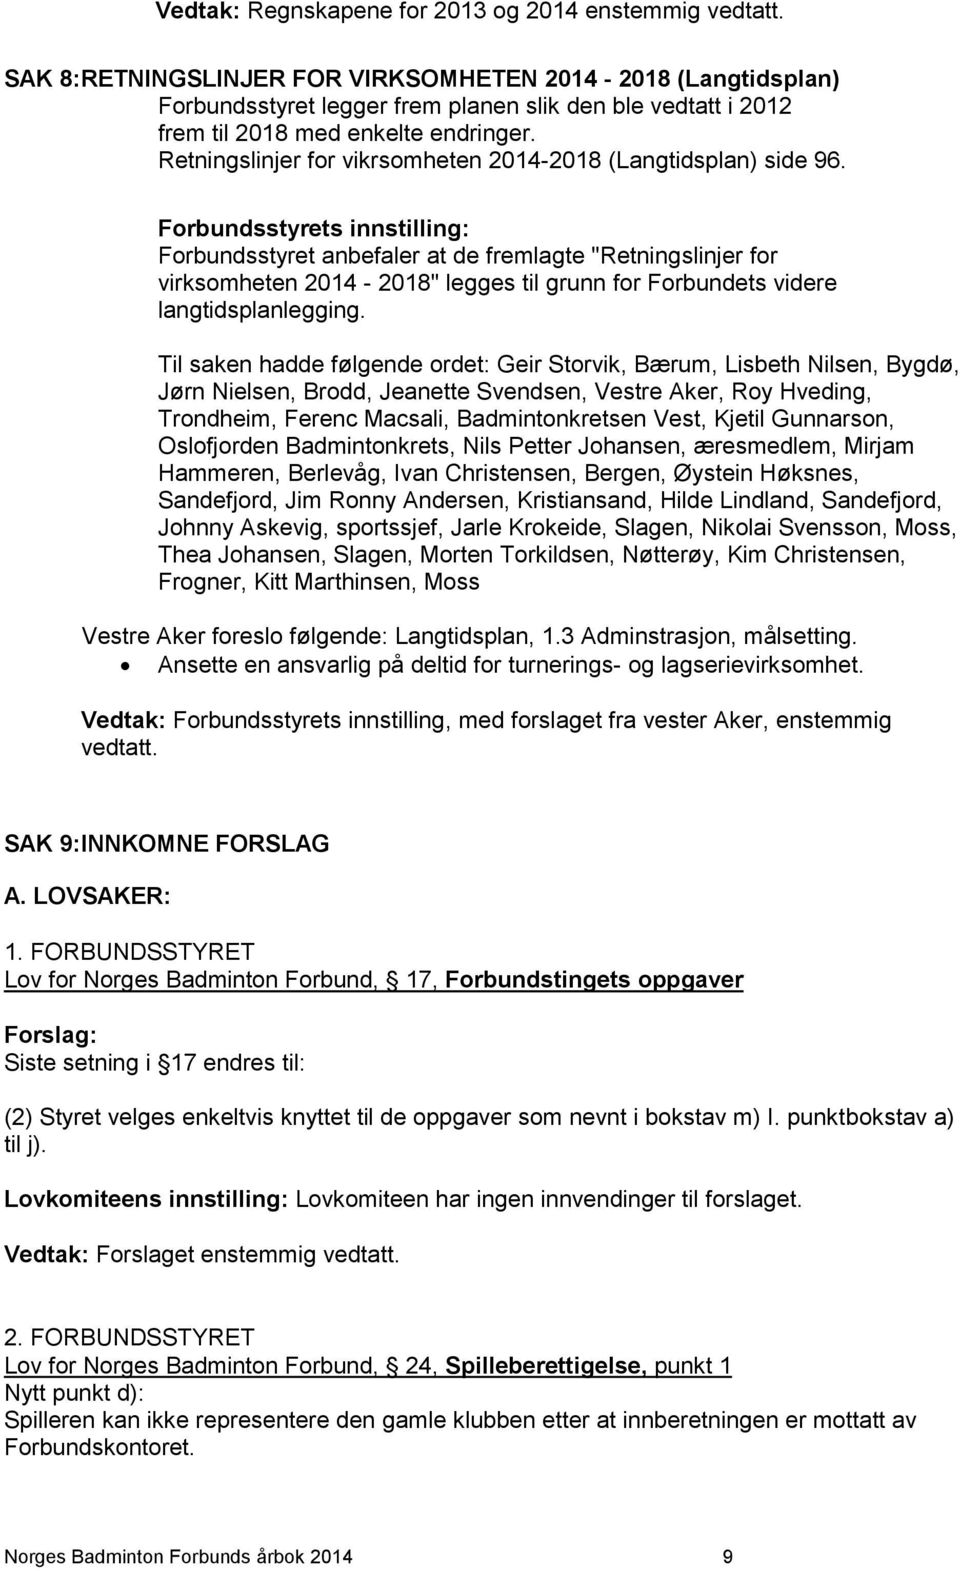 Retningslinjer for vikrsomheten 2014-2018 (Langtidsplan) side 96.